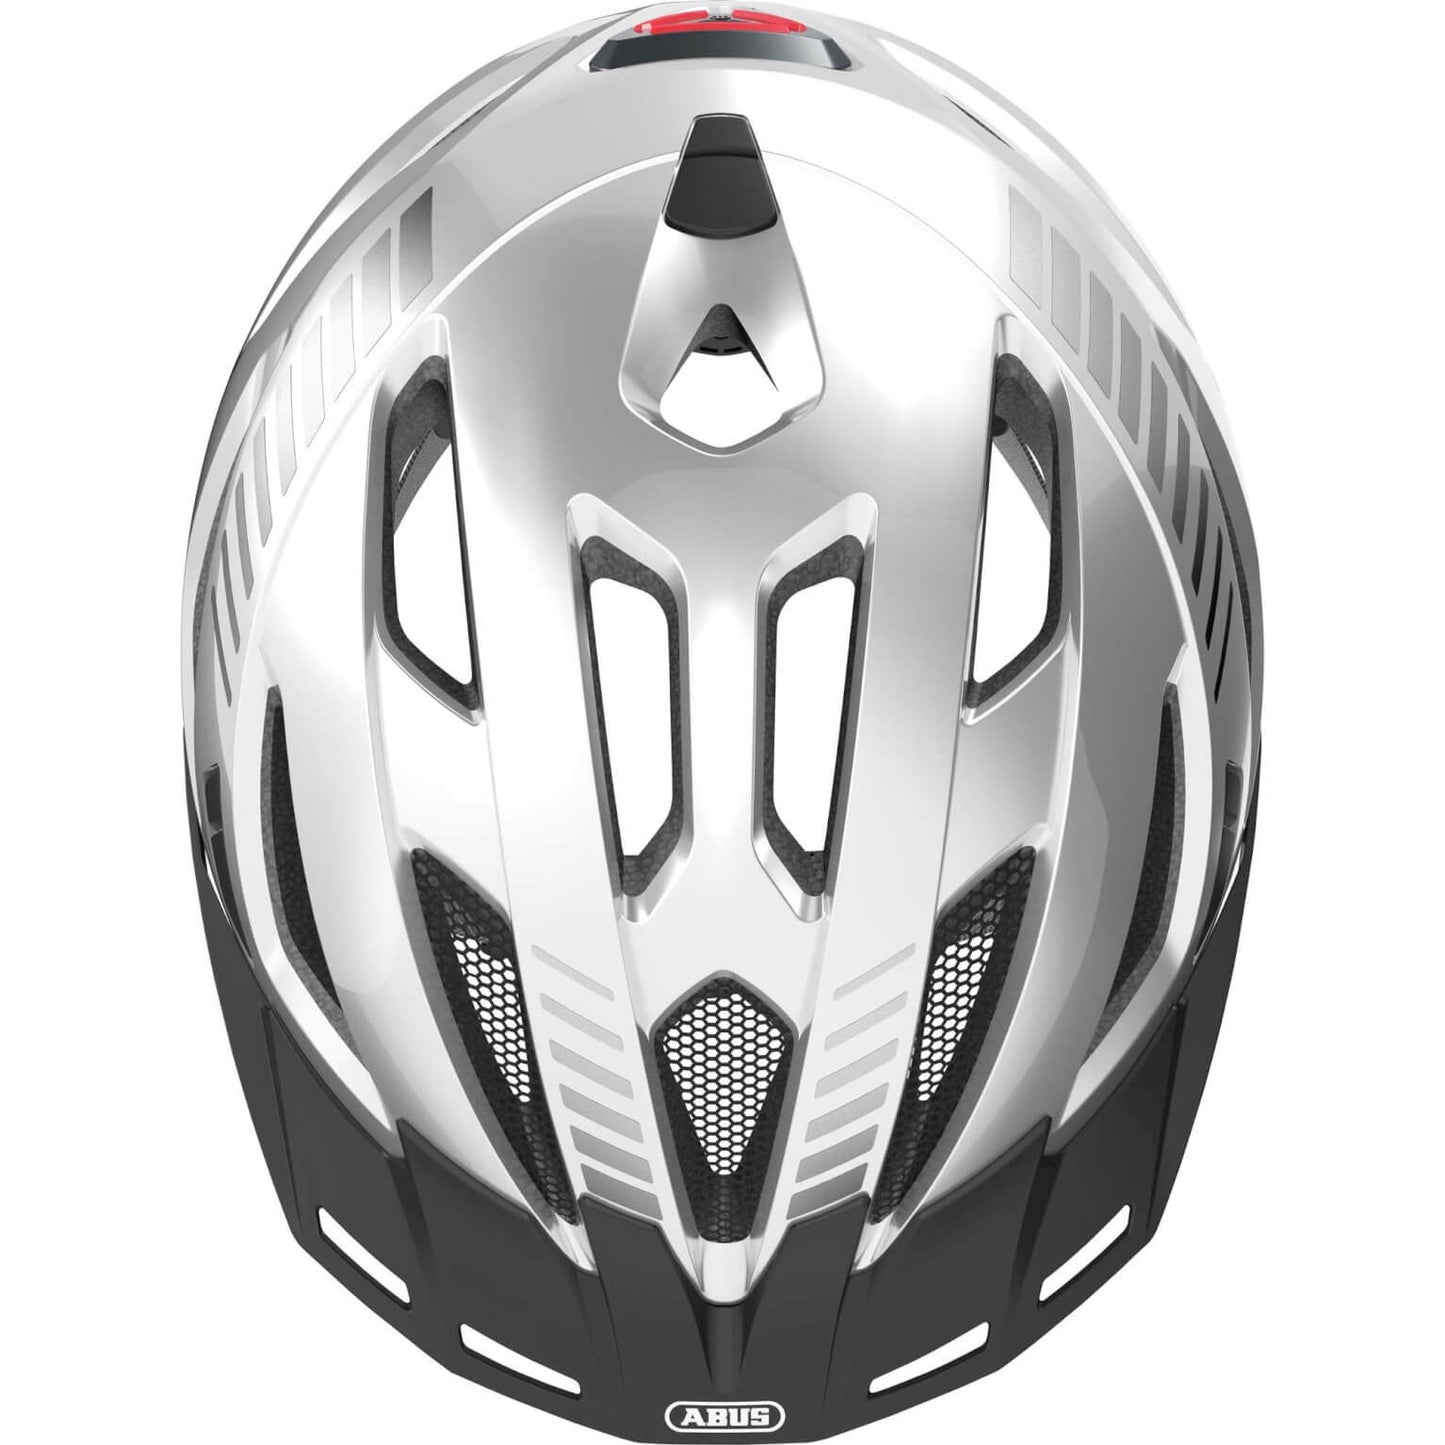 Abus Helmet Urban-I 3.0 Signal Silver XL 61-65 cm